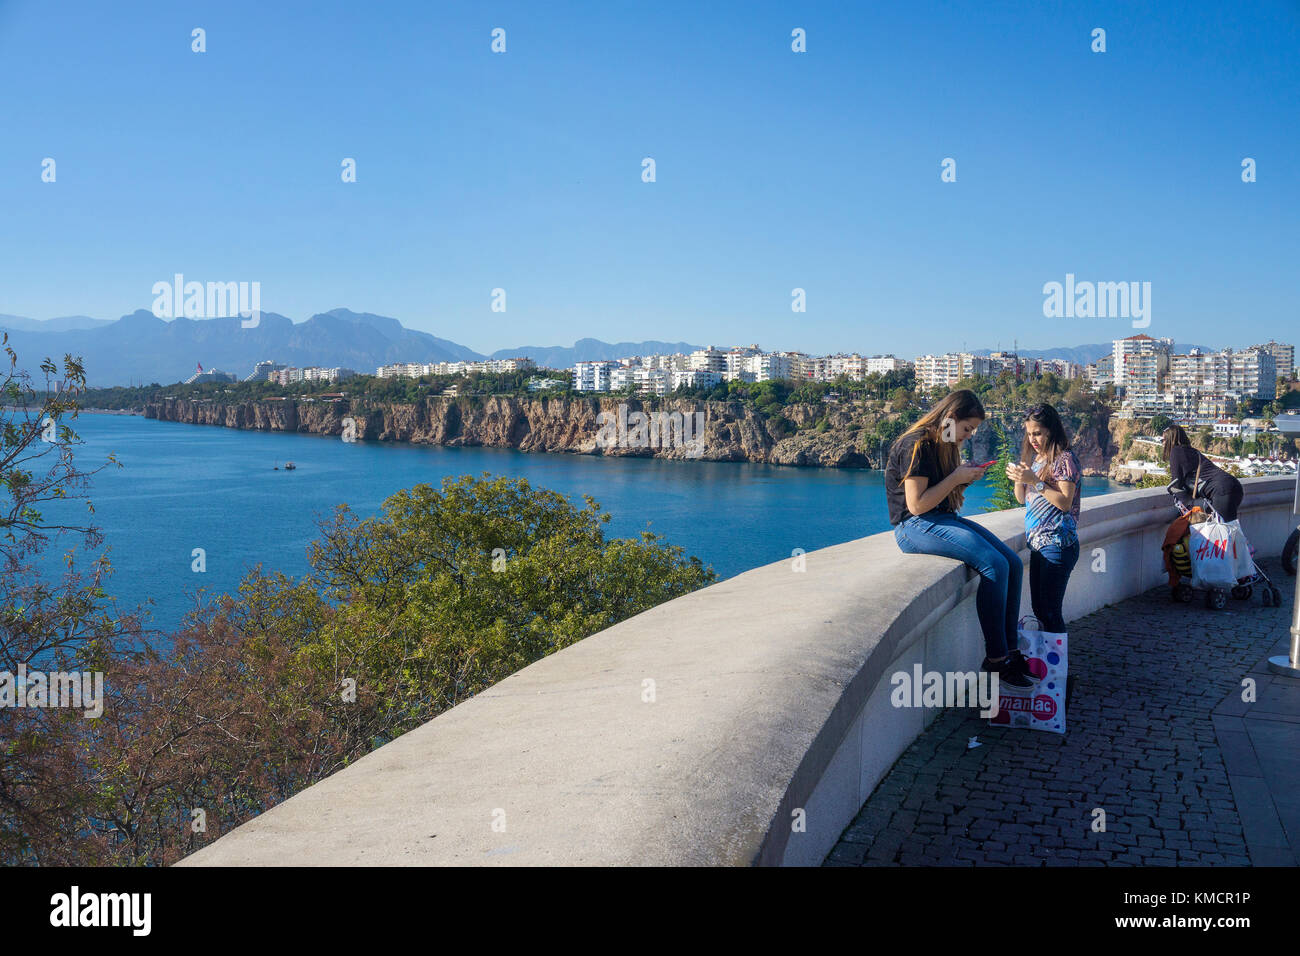 Les jeunes filles avec le smartphone à la promenade, le parc karaalioglu, vieille ville de Kaleici, Antalya, Turkish riviera, Turquie Banque D'Images